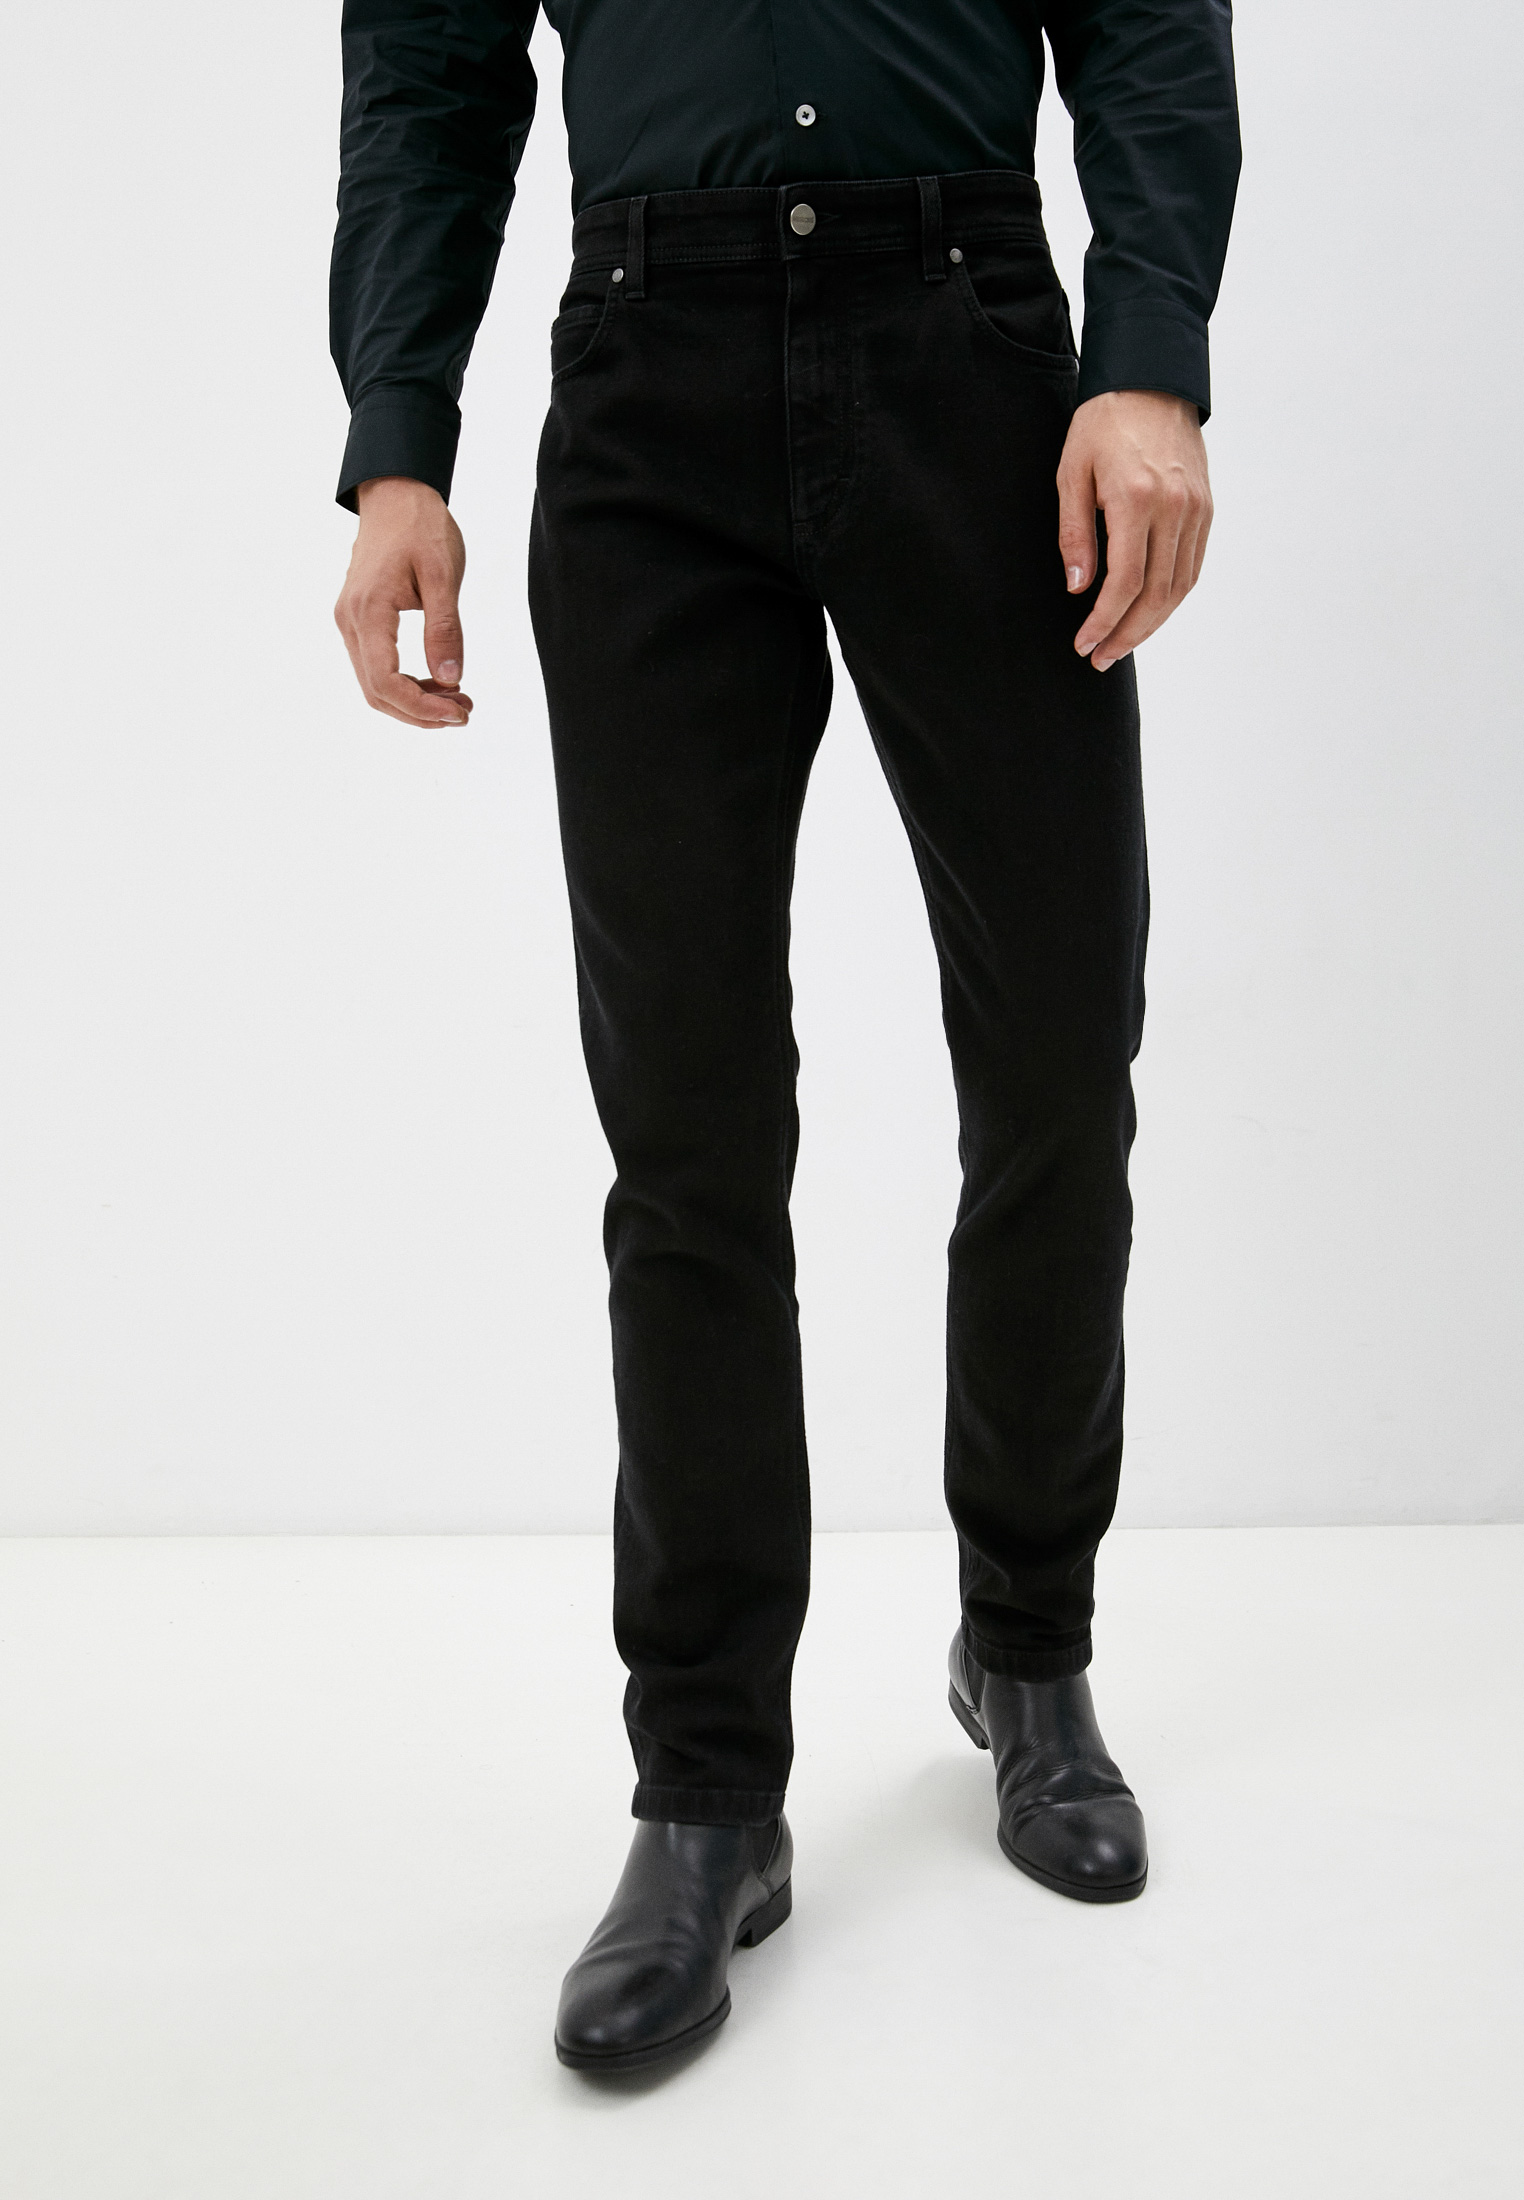 Мужские зауженные джинсы Roberto Cavalli (Роберто Кавалли) INJ240-DN001: изображение 1